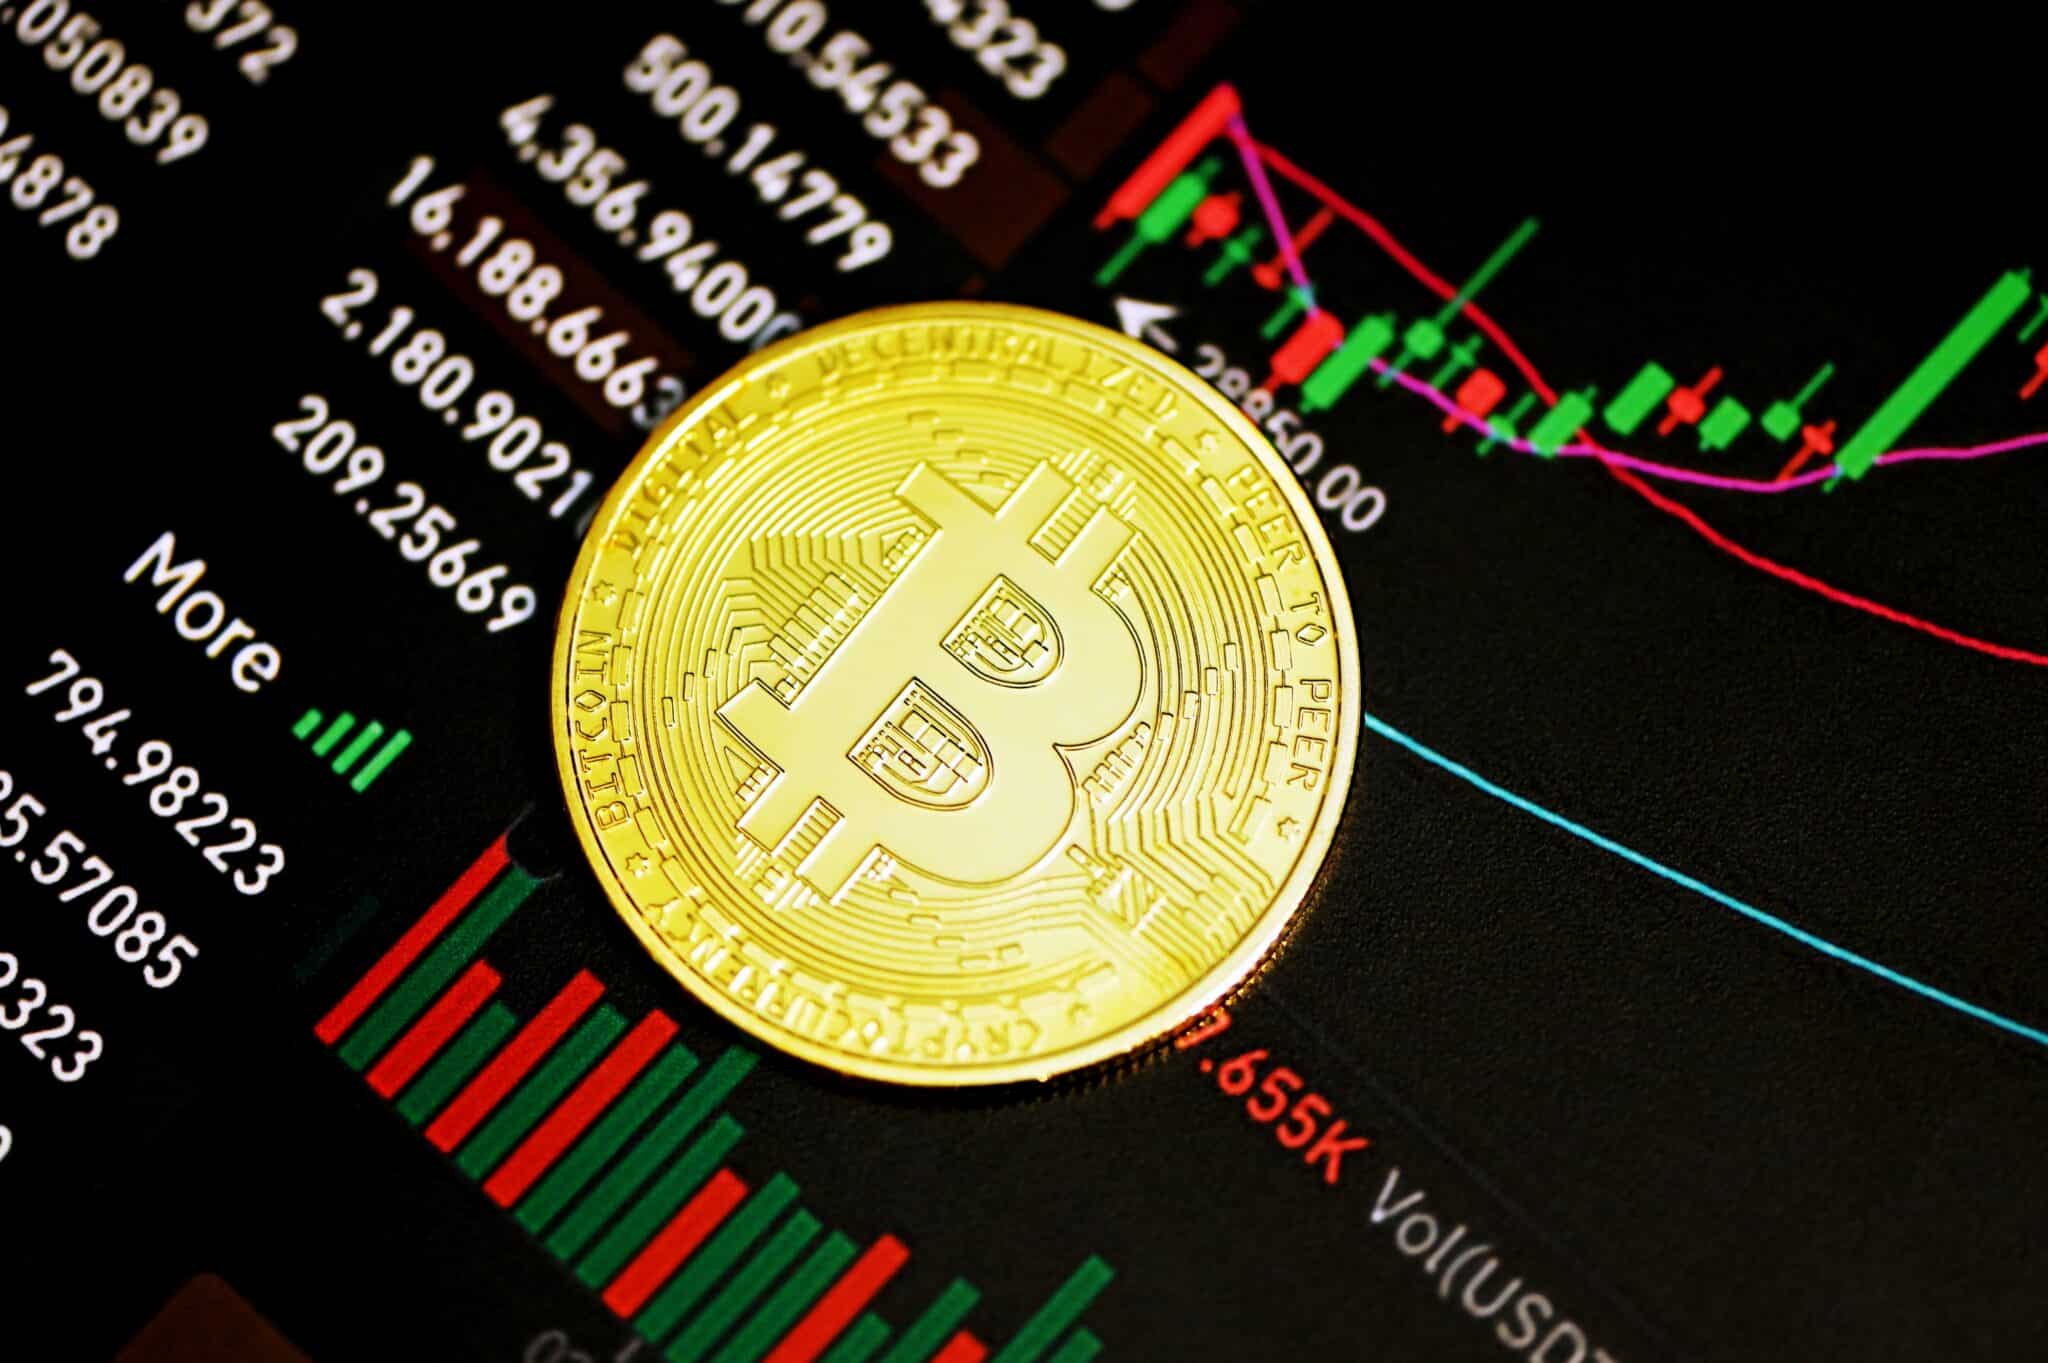 A coin representing the bitcoin